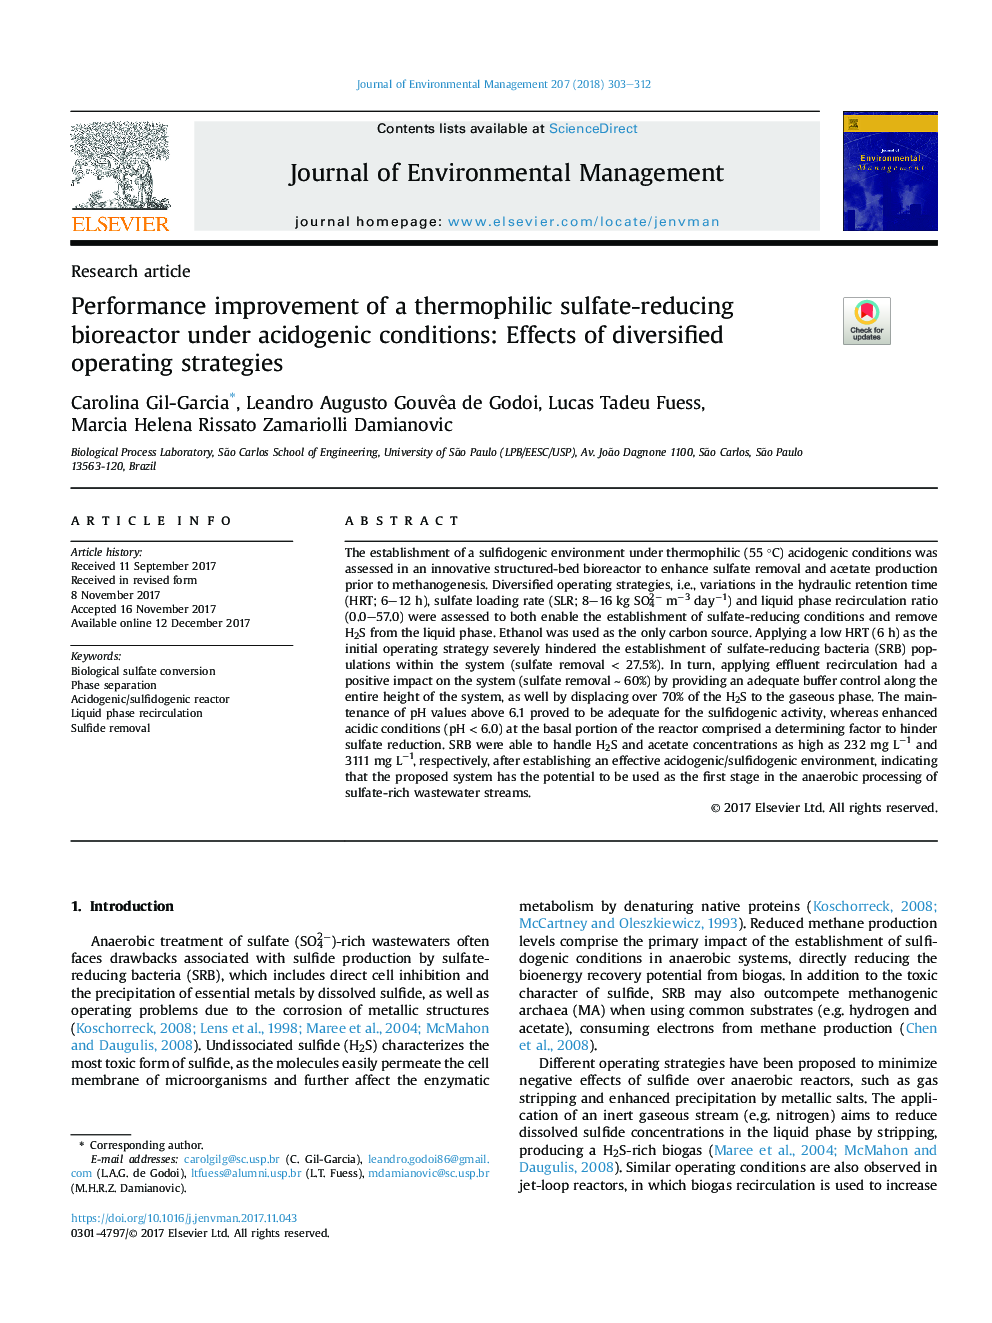 بهبود عملکرد بیوراکتور سولفات ترموفیلیک در شرایط اسیدی: اثر استراتژی های گوناگون 